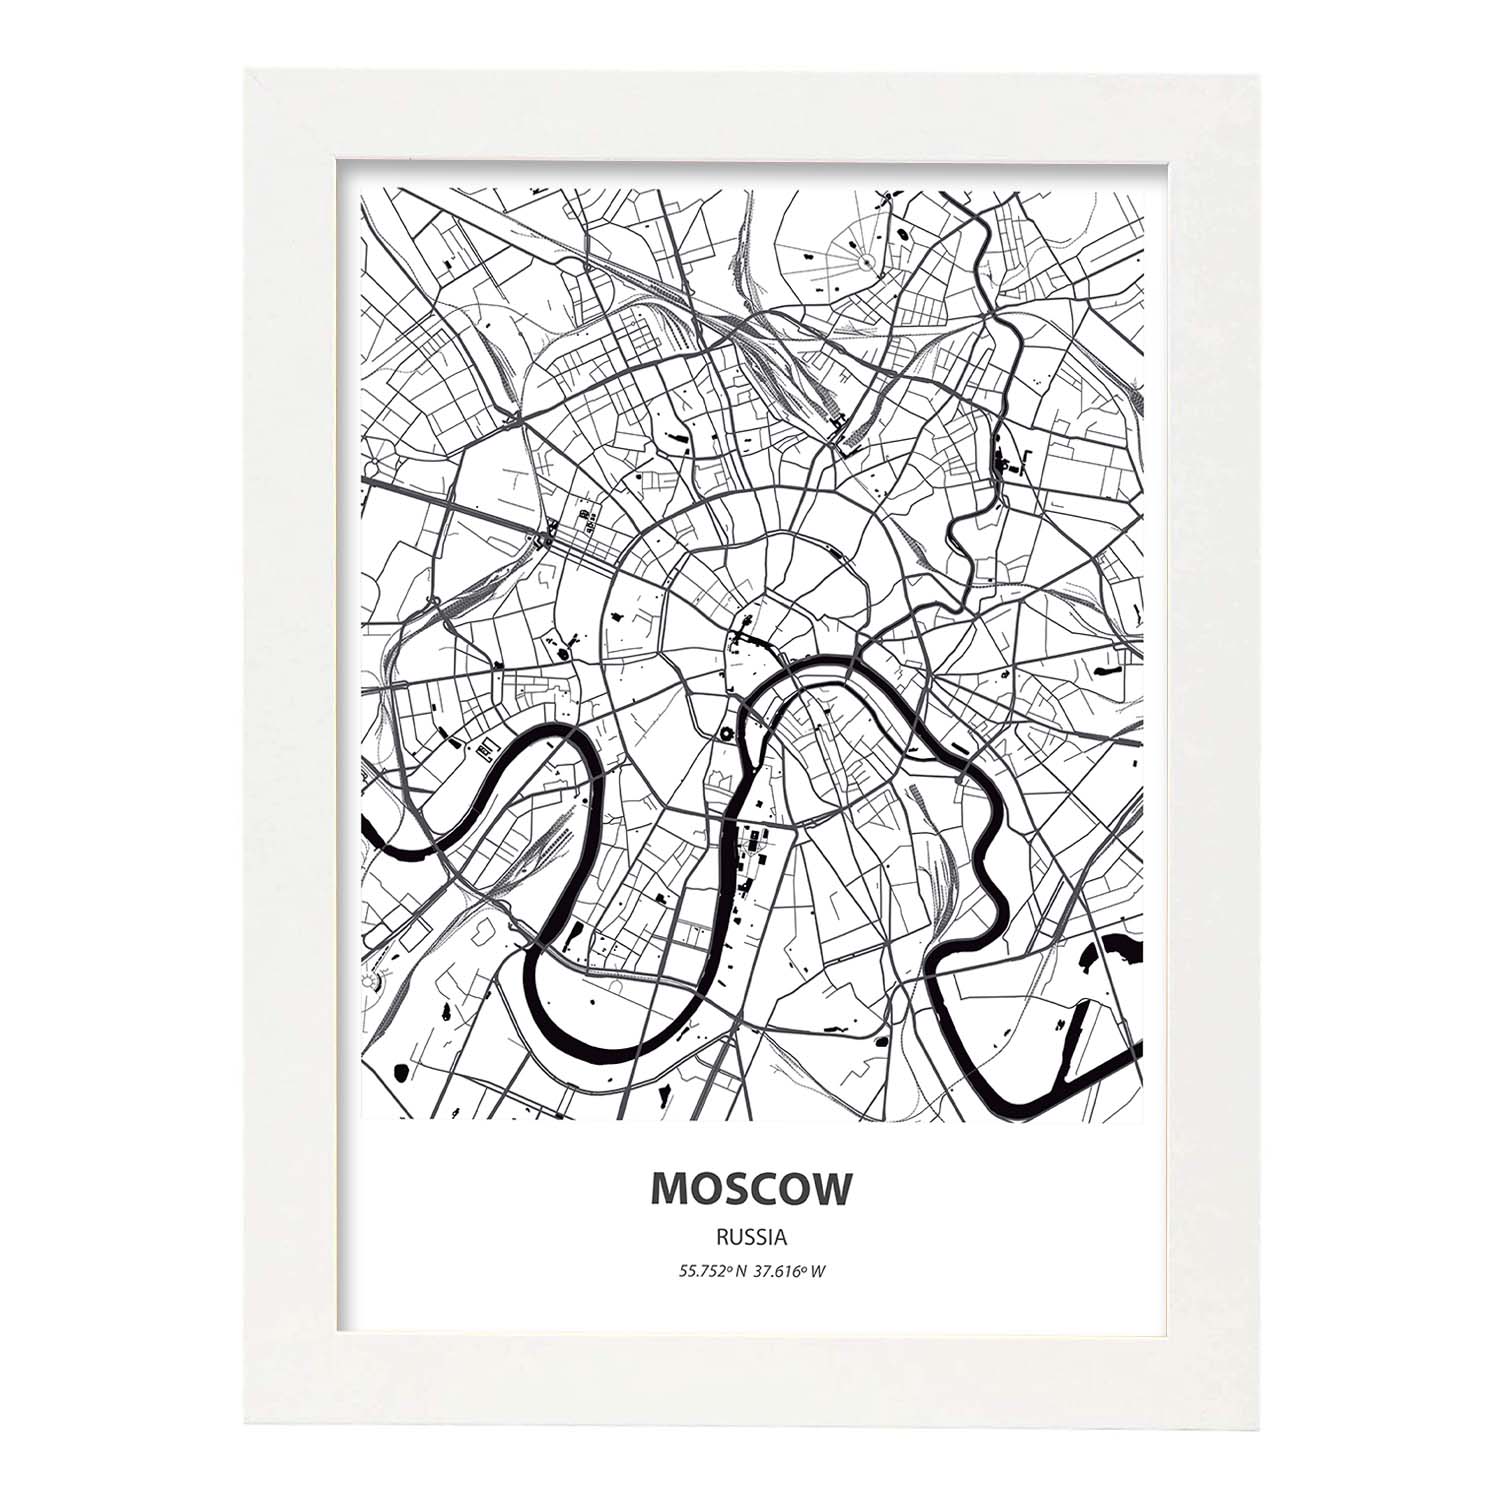 Poster con mapa de Moscow - Rusia. Láminas de ciudades de Asia con mares y ríos en color negro.-Artwork-Nacnic-A3-Marco Blanco-Nacnic Estudio SL